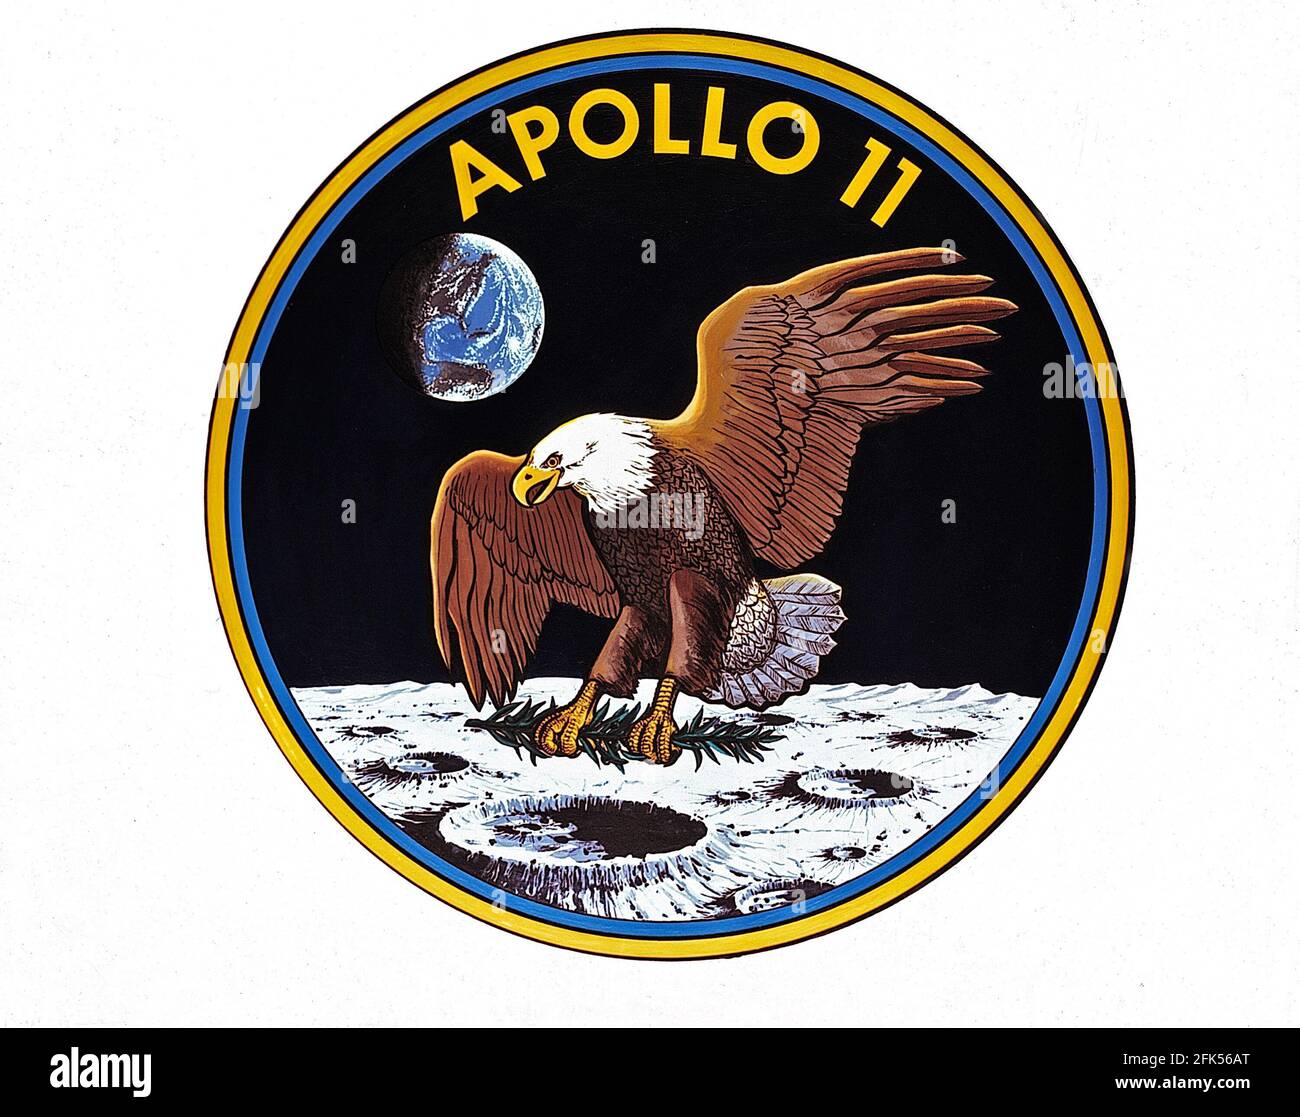 Houston, TX - (DOSSIER) -- l'emblème officiel d'Apollo 11, la première mission d'atterrissage lunaire prévue aux États-Unis dévoilé le 1er mai 1969. L'équipage de l'Apollo 11 était composé d'astronautes Neil A. Armstrong, commandant; Michael Collins, pilote du module de commande; et Edwin E. Aldrin, Jr., pilote du module lunaire. Il a été lancé à partir du Centre spatial Kennedy en Floride le 16 juillet 1969. Atterrissage lunaire le 20 juillet 1969. L'équipage a pris fin le 24 juillet 1969. L'insigne de l'Administration nationale de l'aéronautique et de l'espace (NASA) pour les vols Apollo est réservé à l'usage des astronautes et à l'usage officiel de la NASA A. Banque D'Images